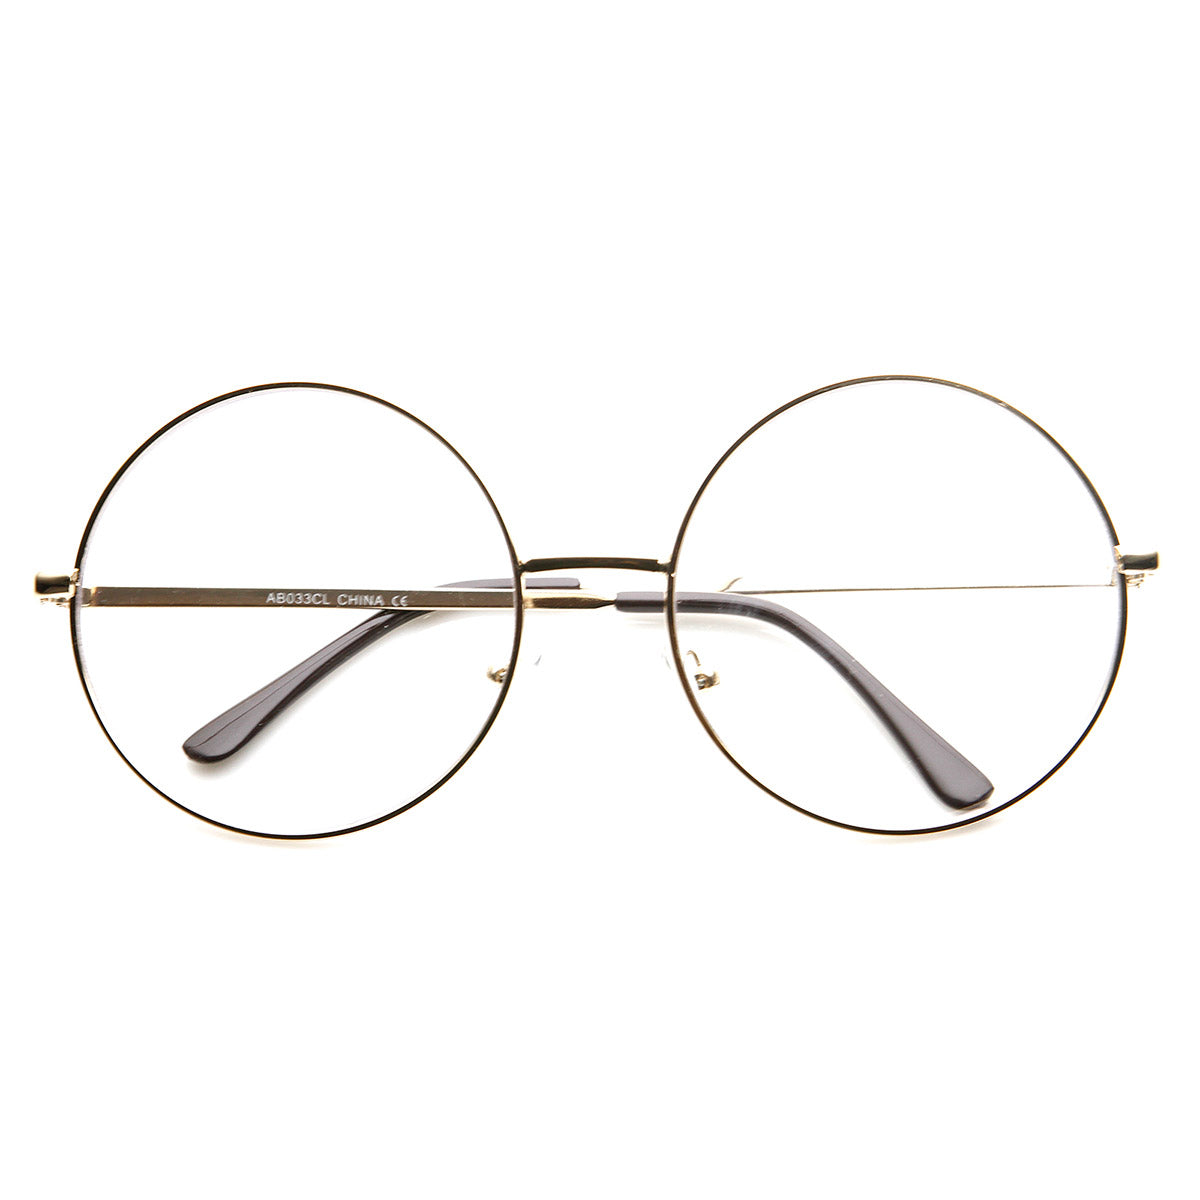 Quality round eyeglasses 5212 | Glassesbd